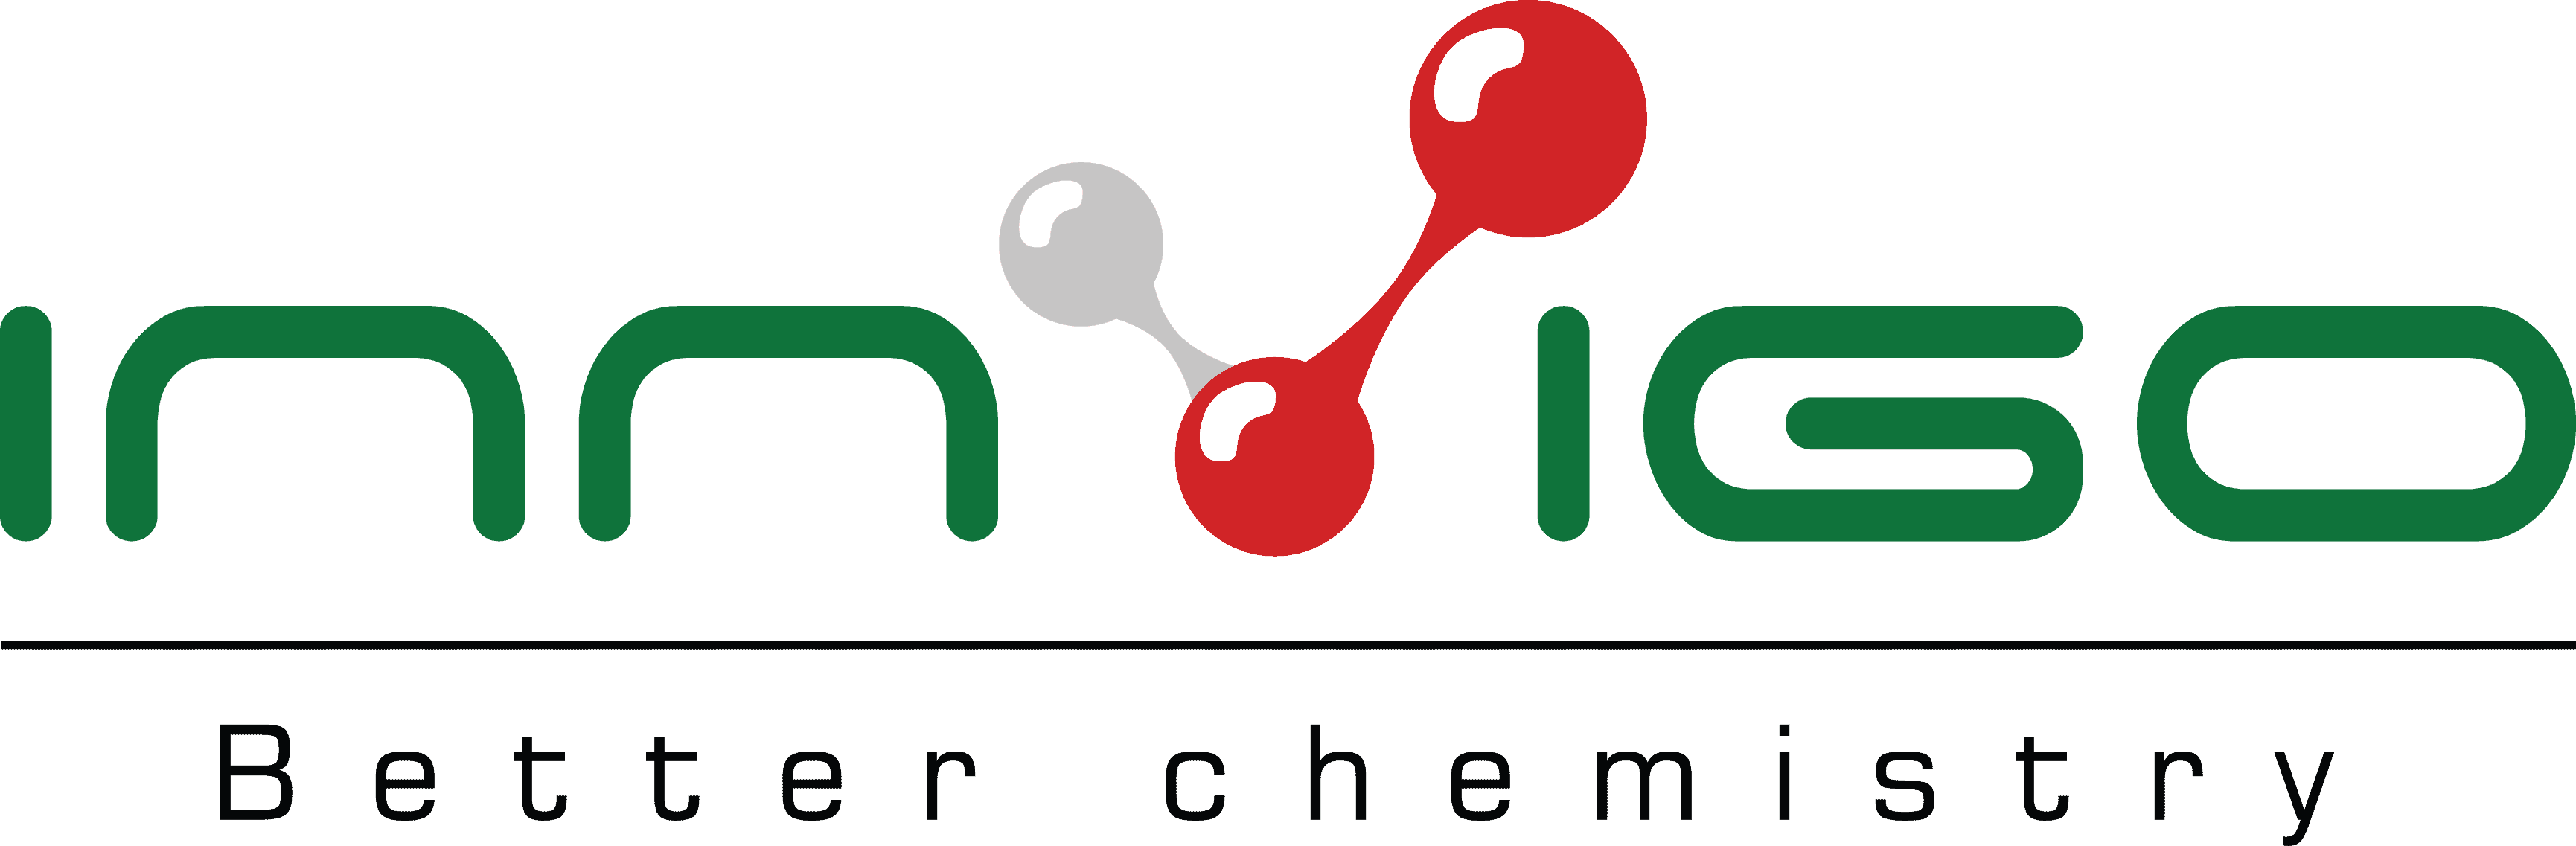 Innvigo Better chemistry